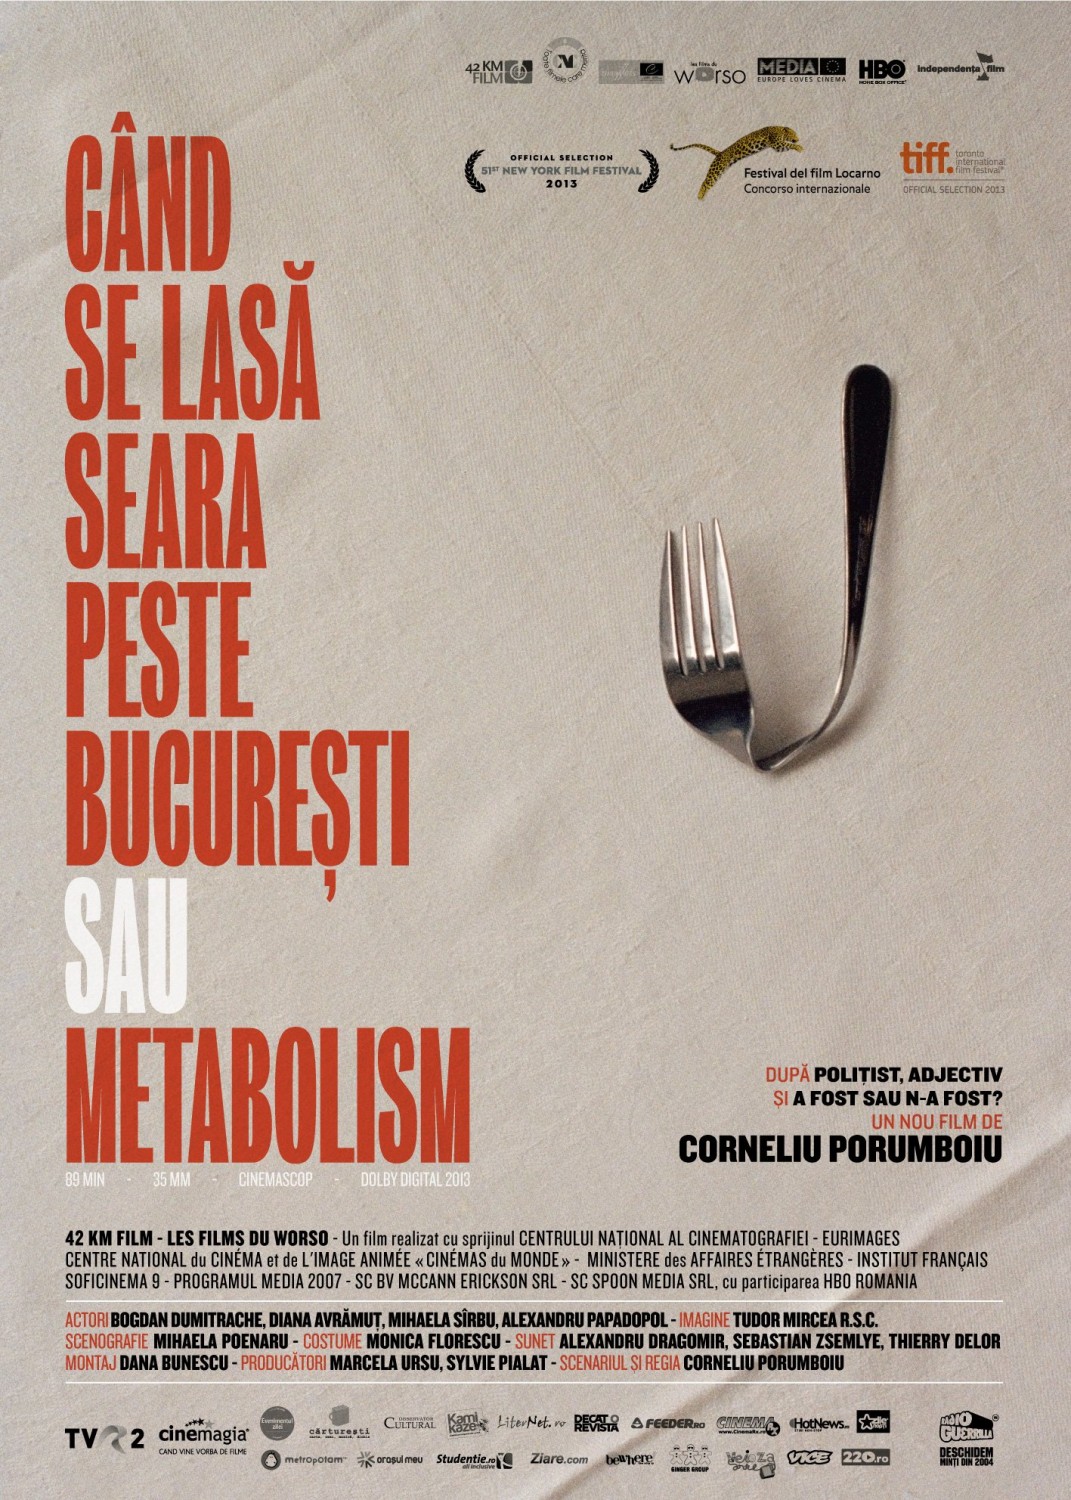 Extra Large Movie Poster Image for Când se lasa seara peste Bucuresti sau metabolism 